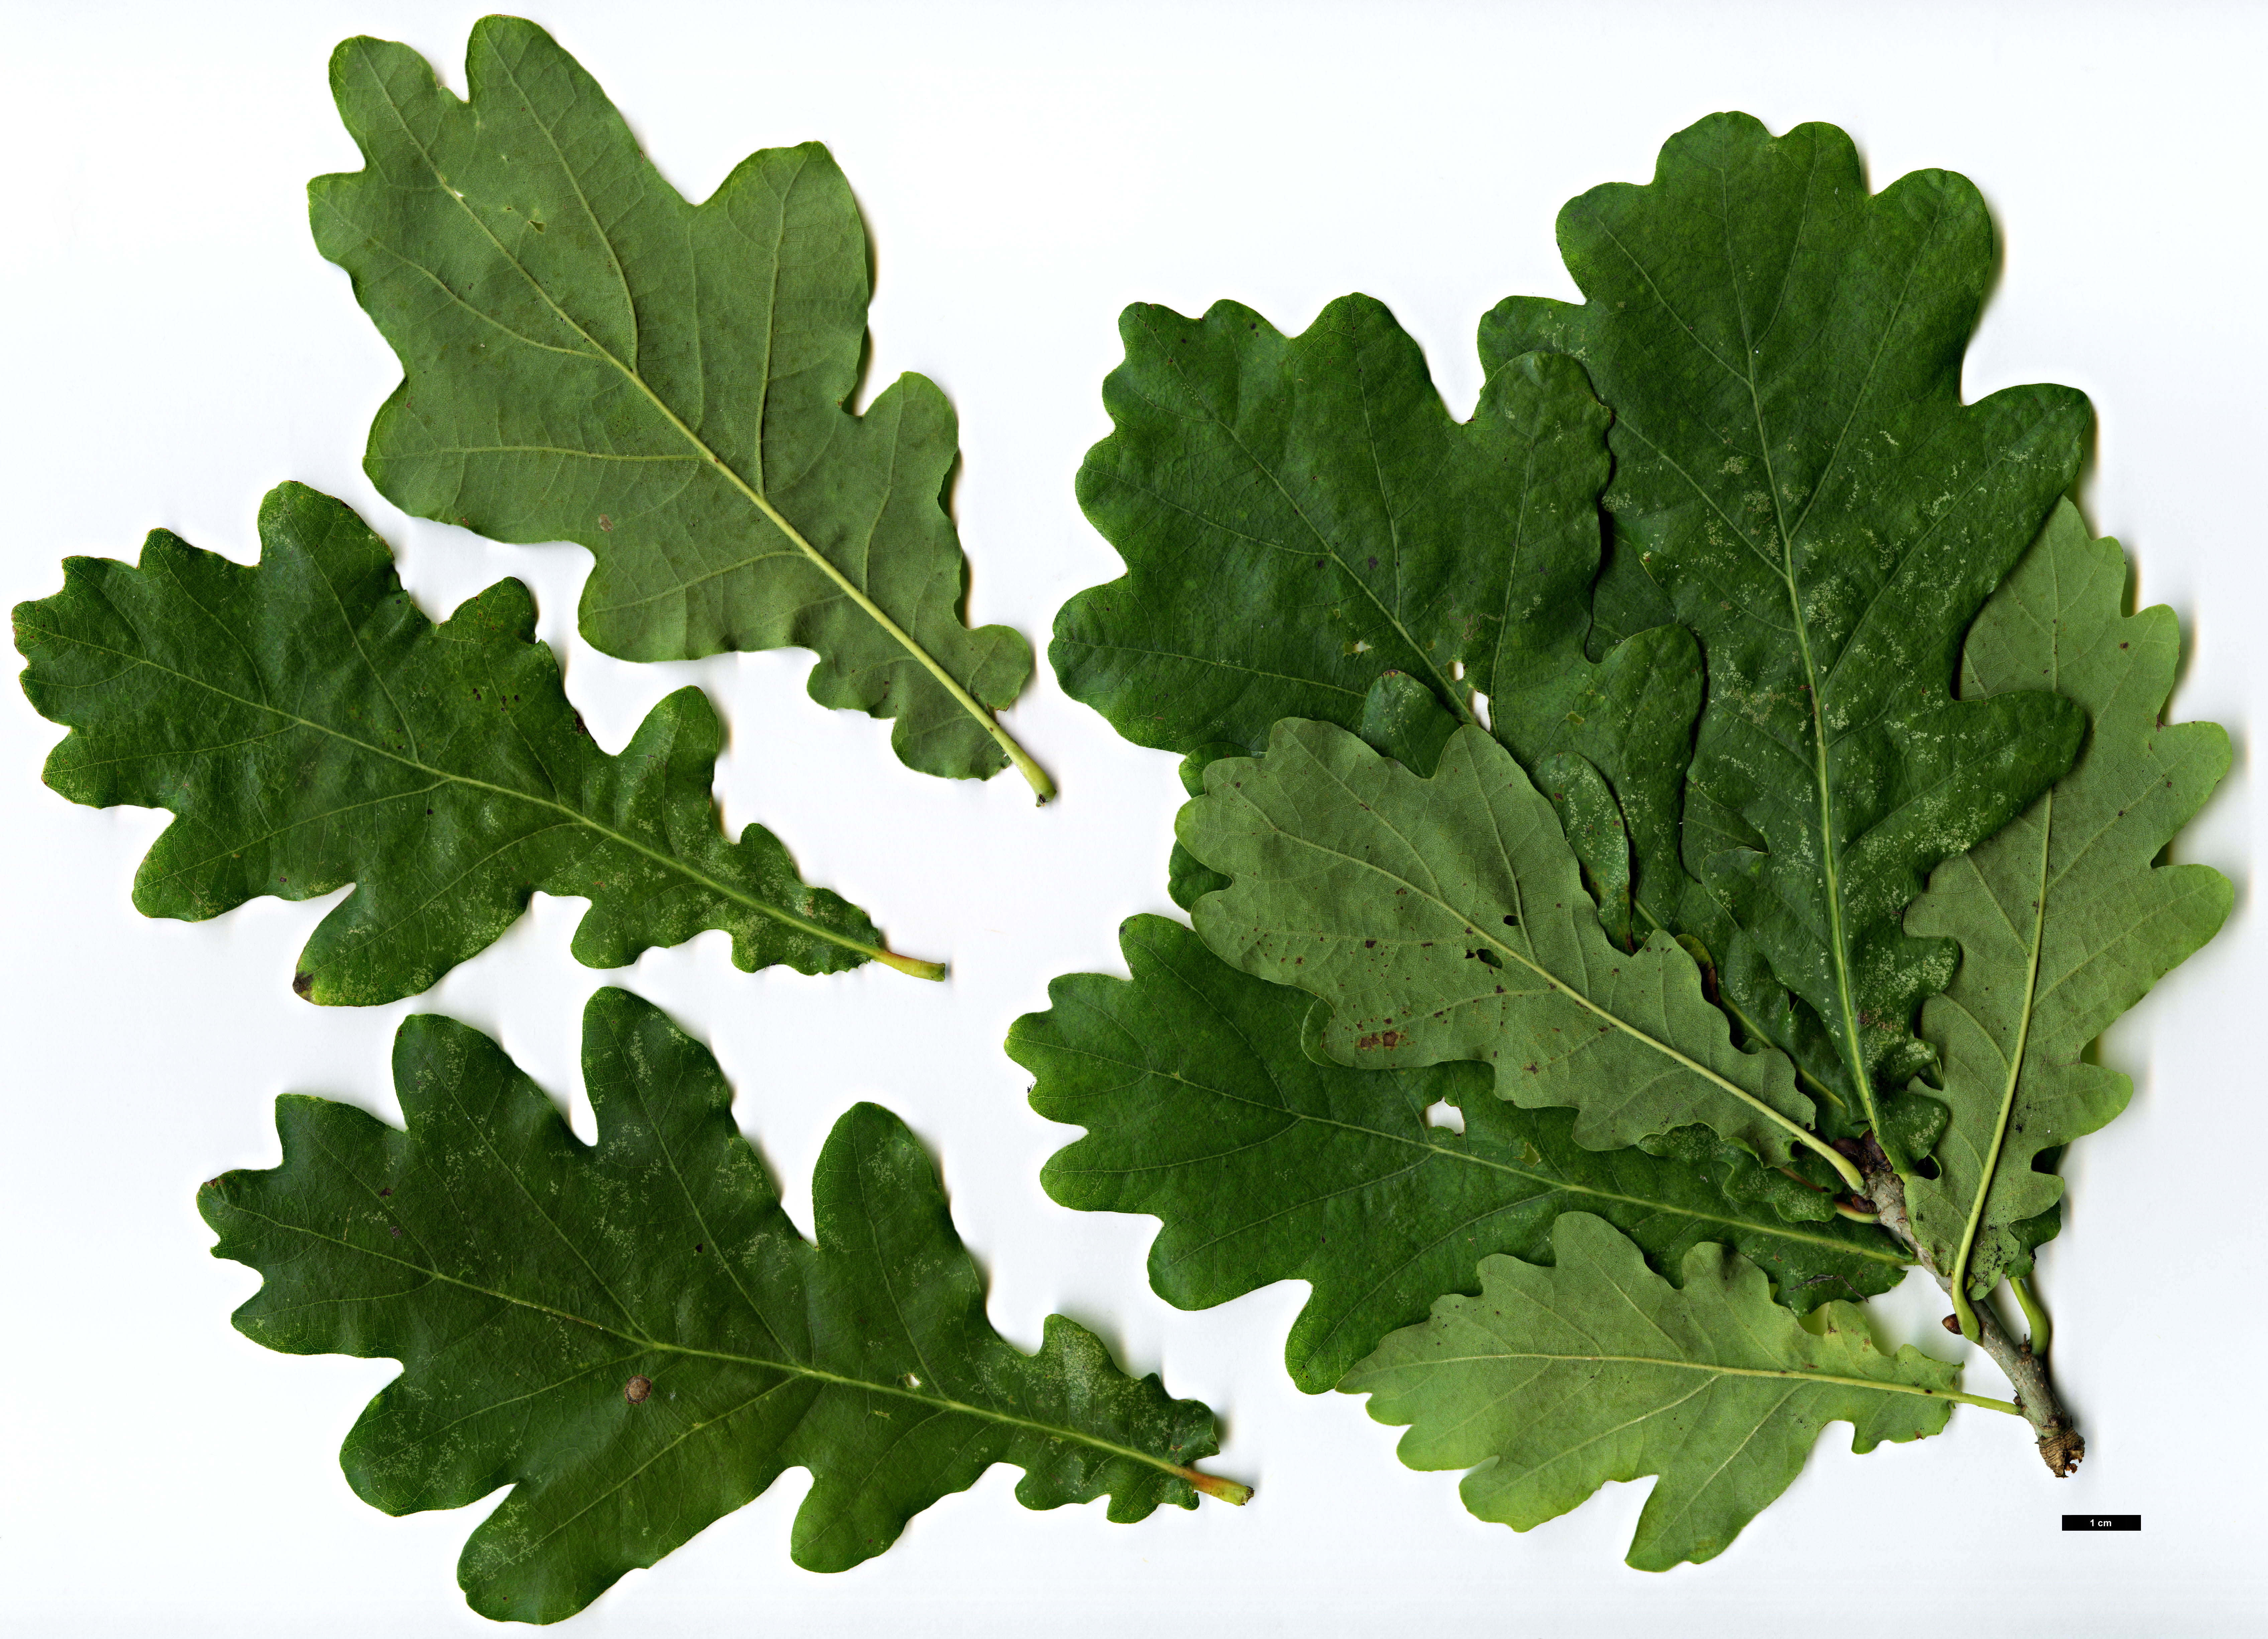 High resolution image: Family: Fagaceae - Genus: Quercus - Taxon: robur - SpeciesSub: Fastigiata Group 'Hungaria'